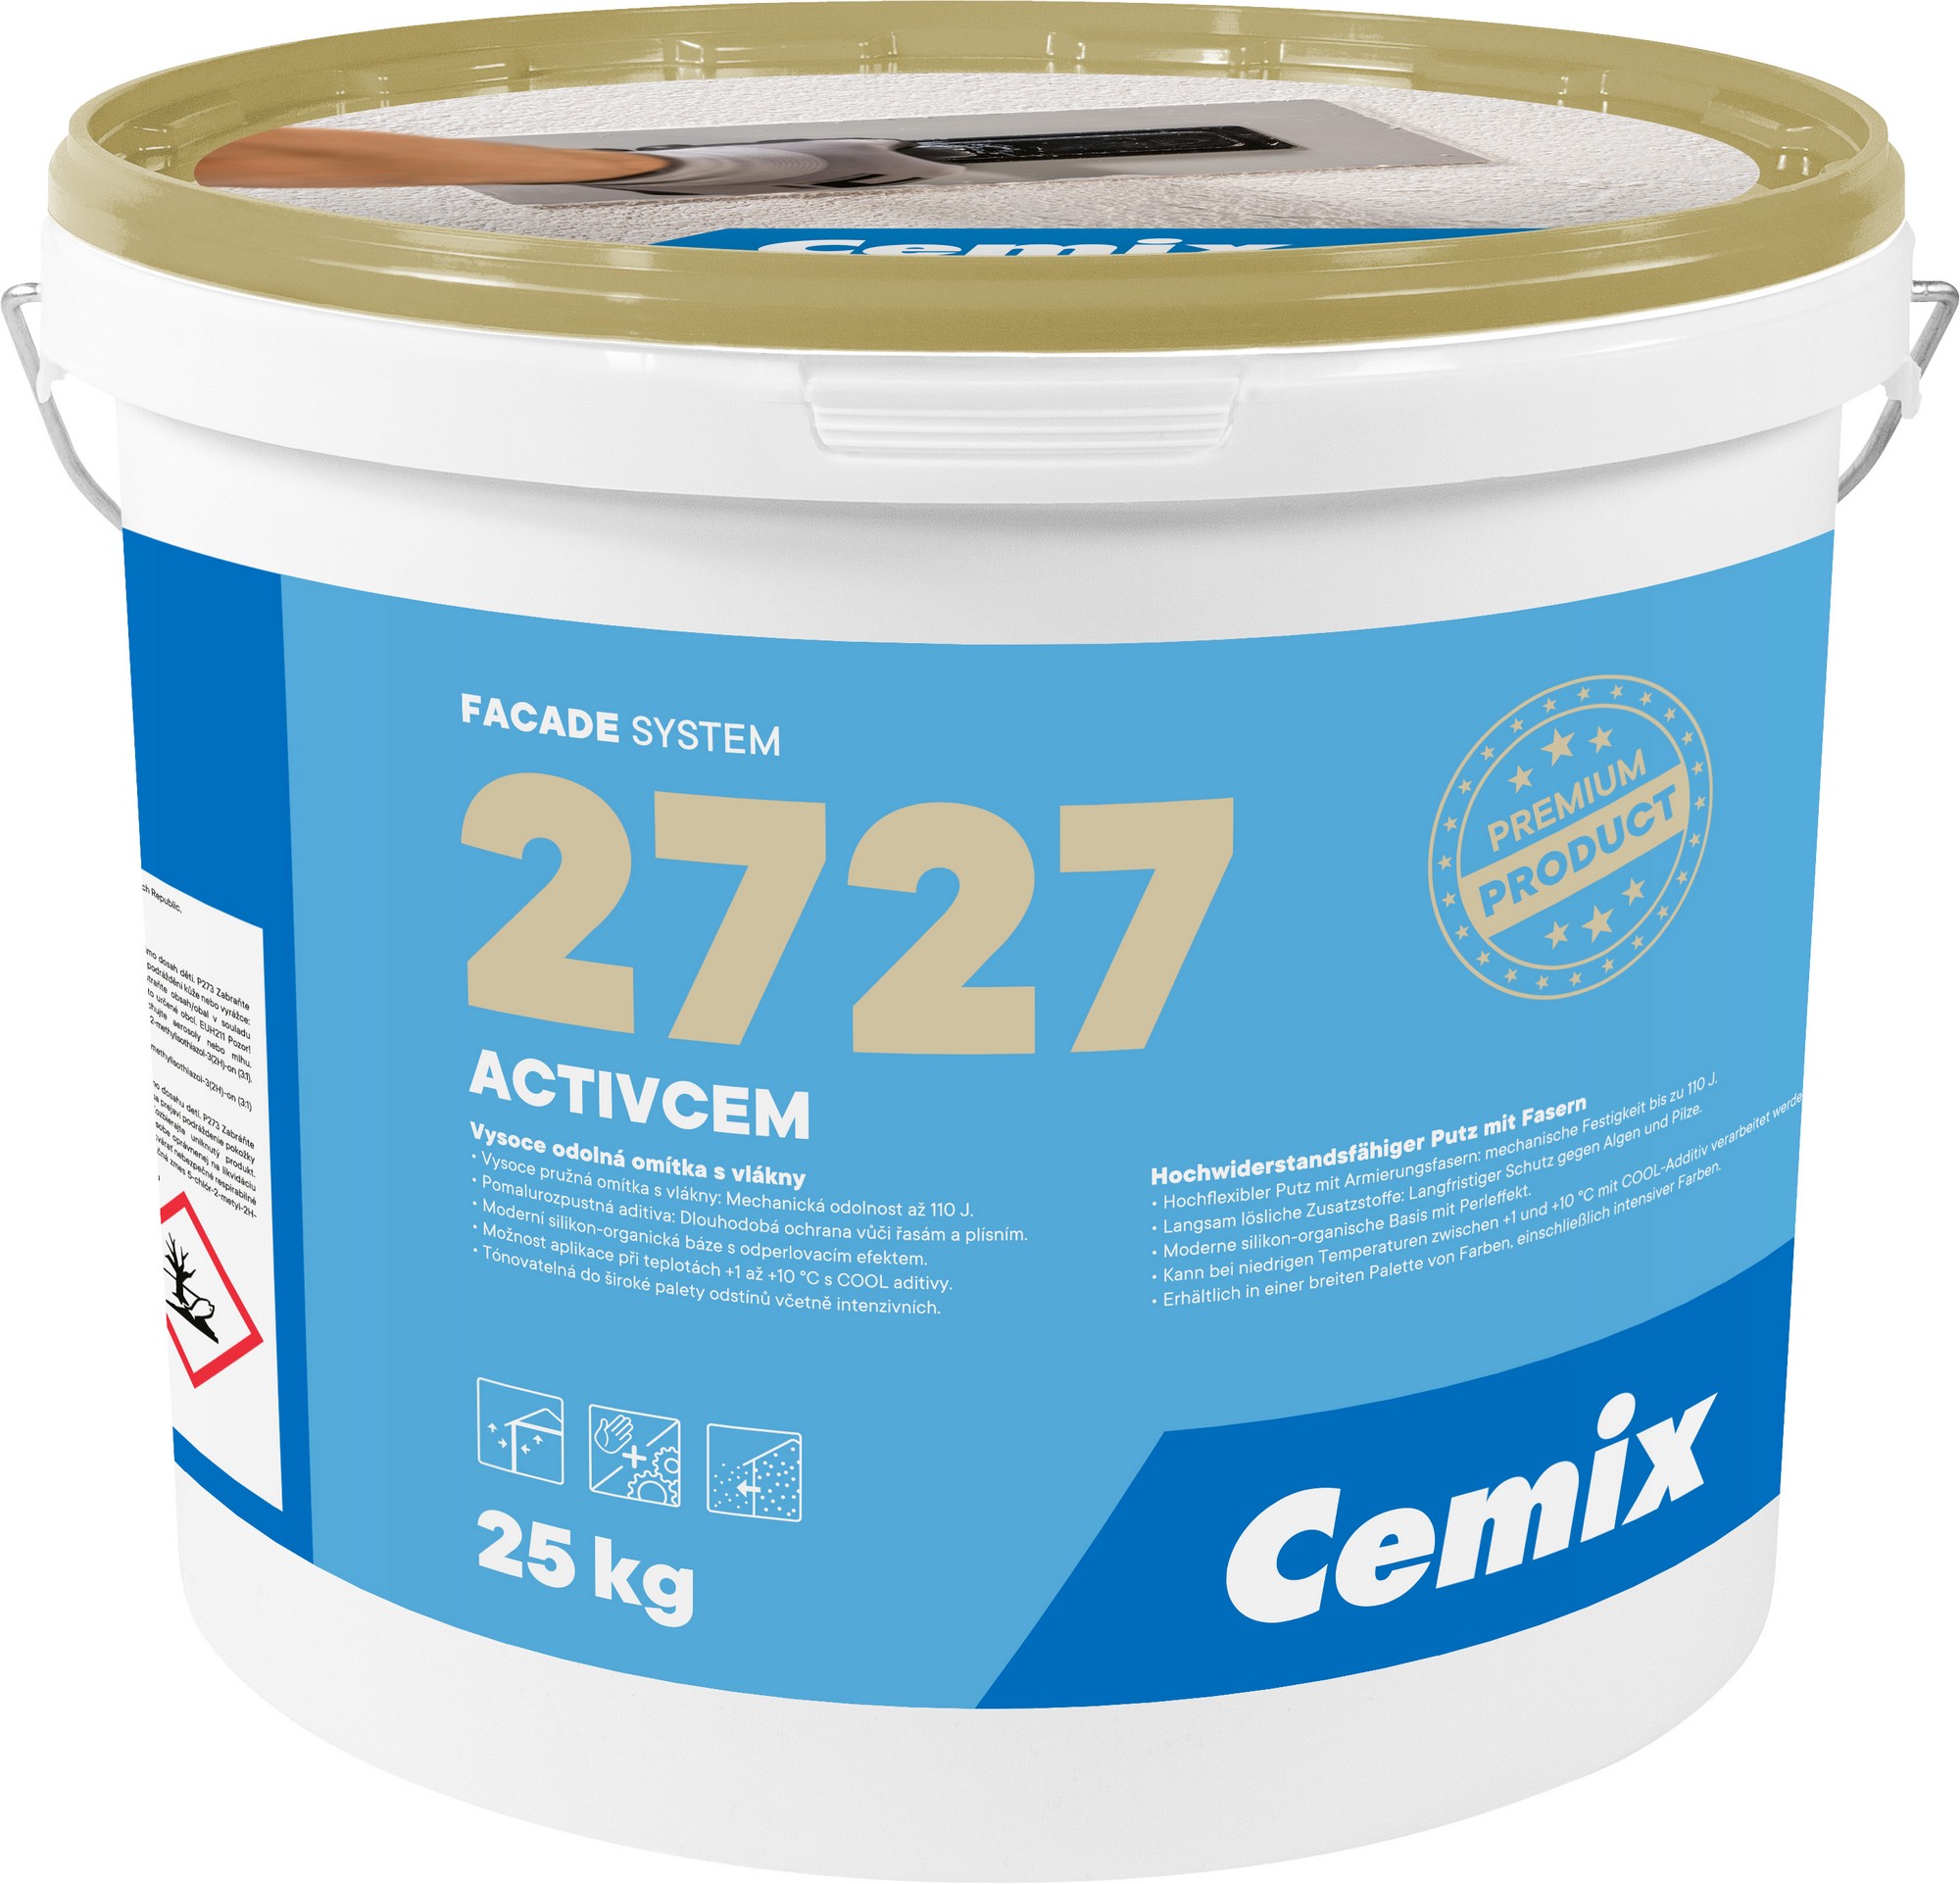 Omítka vysokopevnostní Cemix 2727 ActivCem Z 3,0 mm bezpř., 25 kg